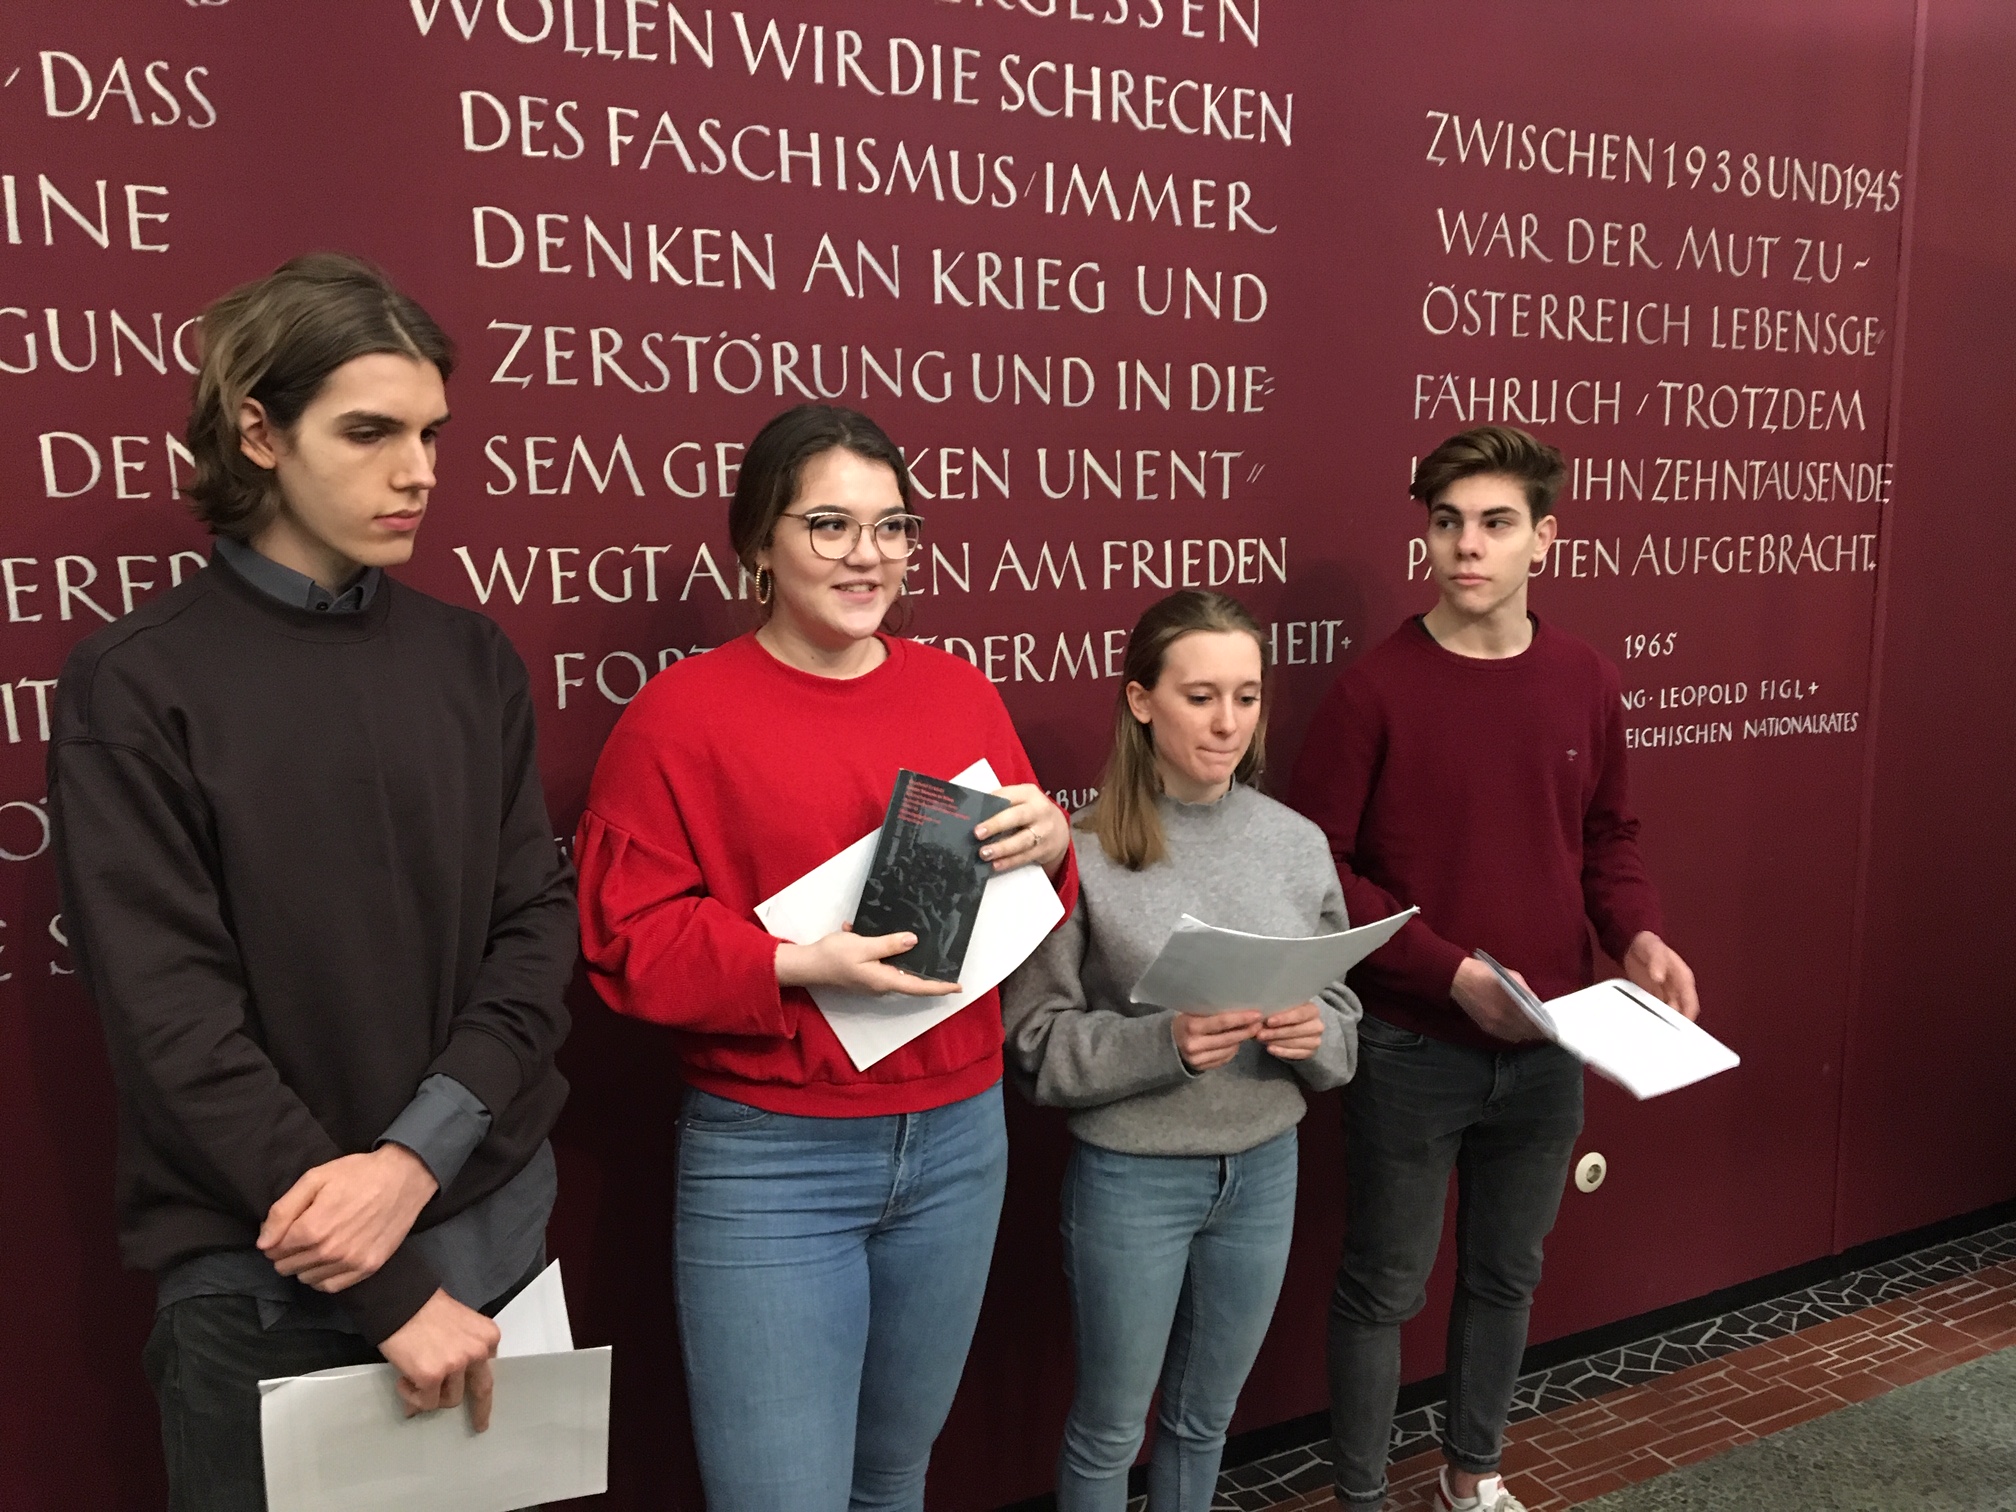 Schüler:innen gestalten die Gedenkveranstaltung zum Jahrestag der Annexion Österreichs mit